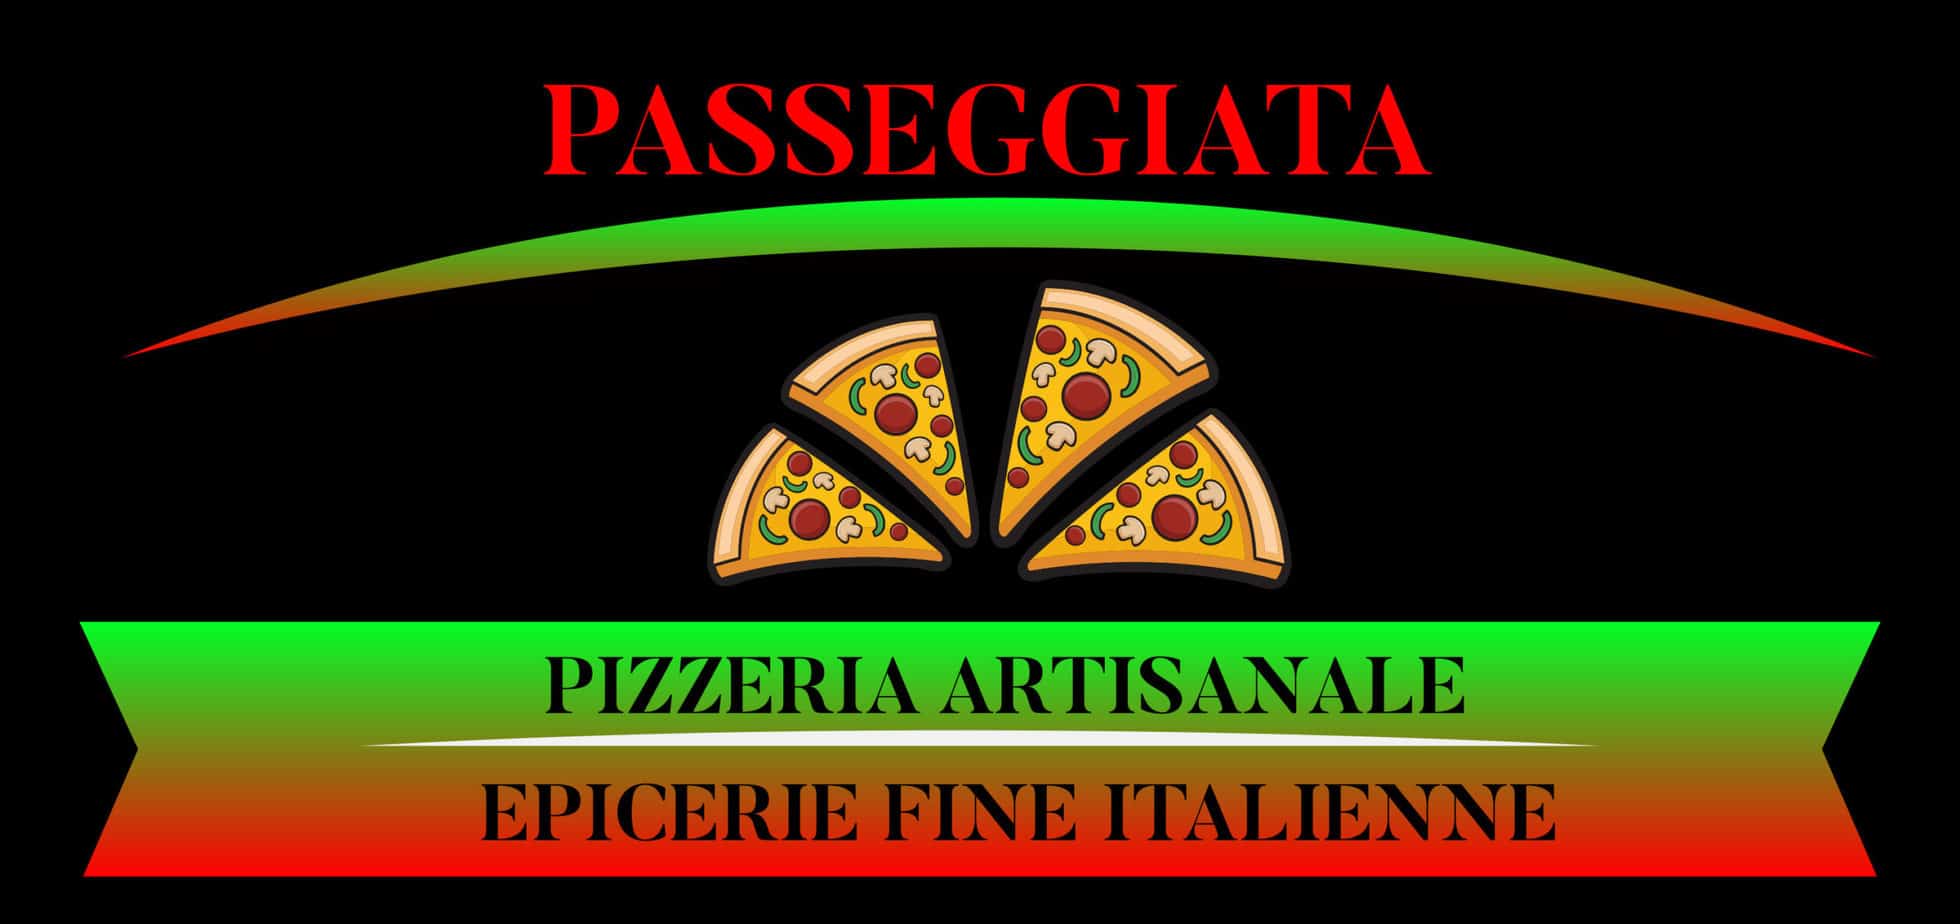 Campari 70cl - épicerie fine italienne pizzeria Passeggiata